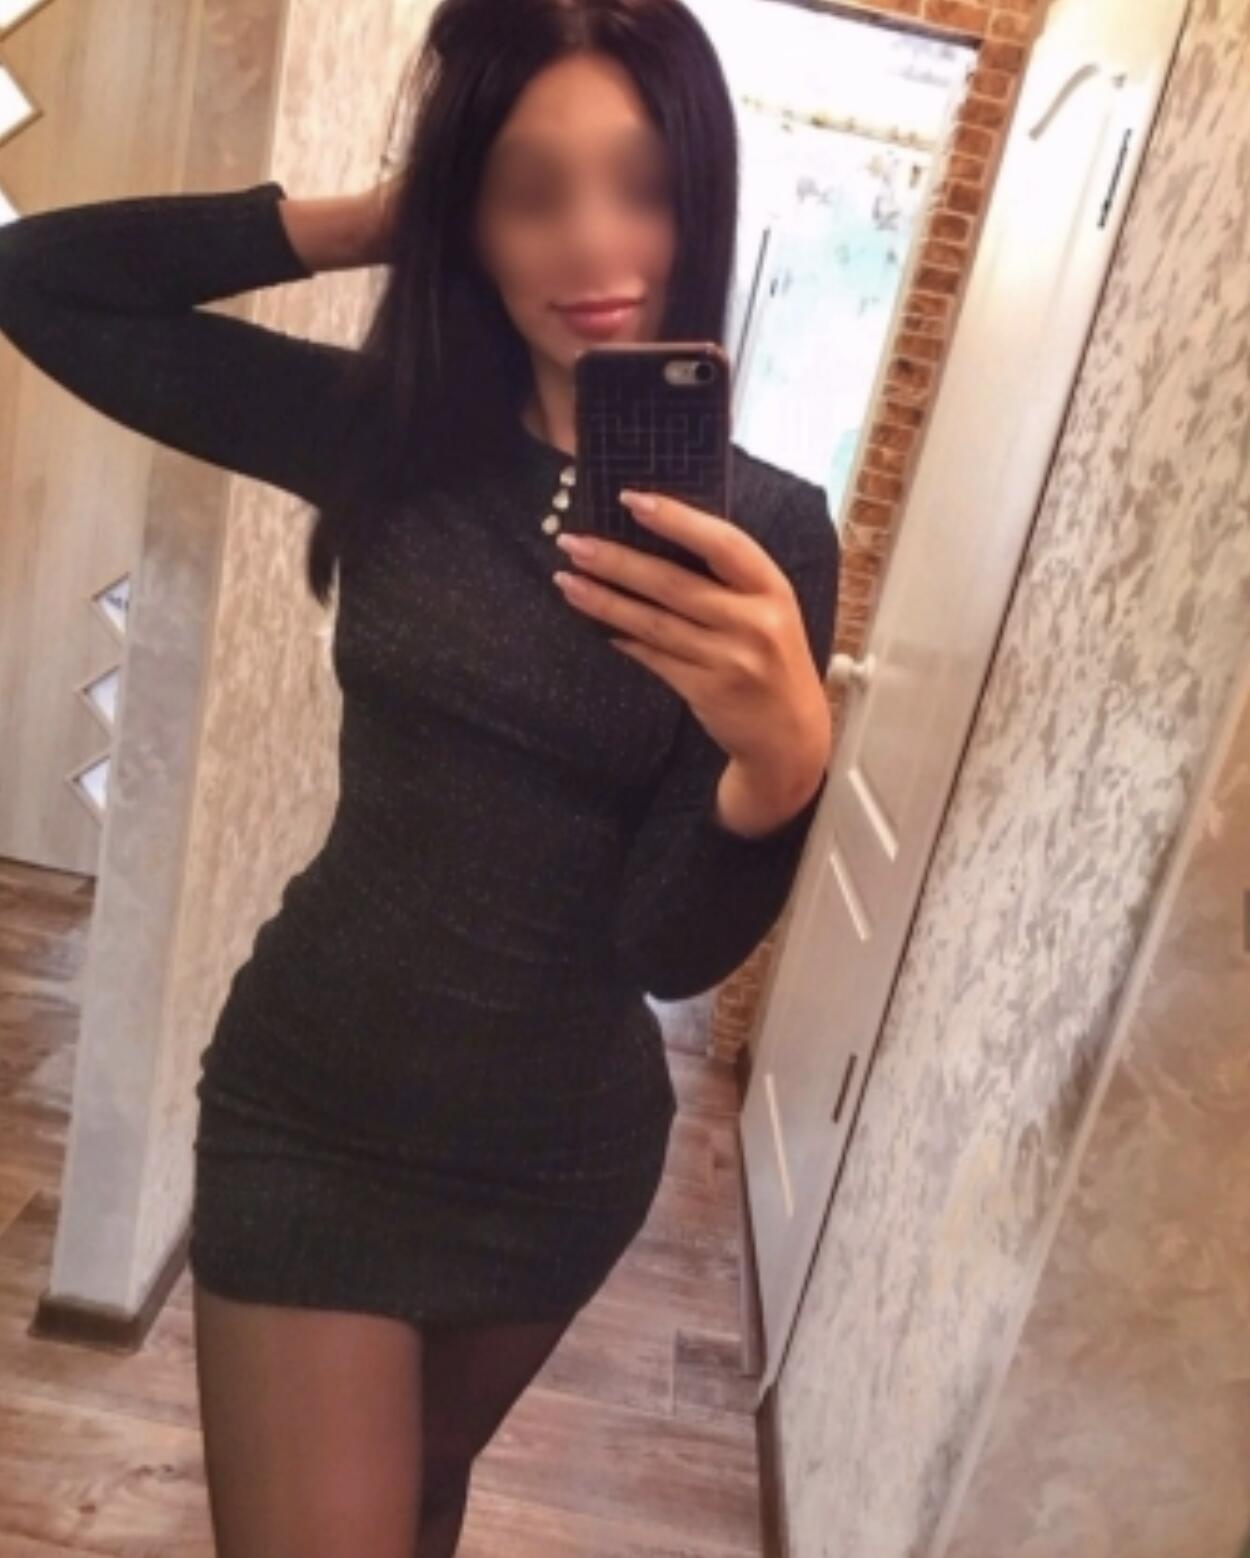 Проститутка Тома, фото 3, тел: 0960227730. В центре города - Киев